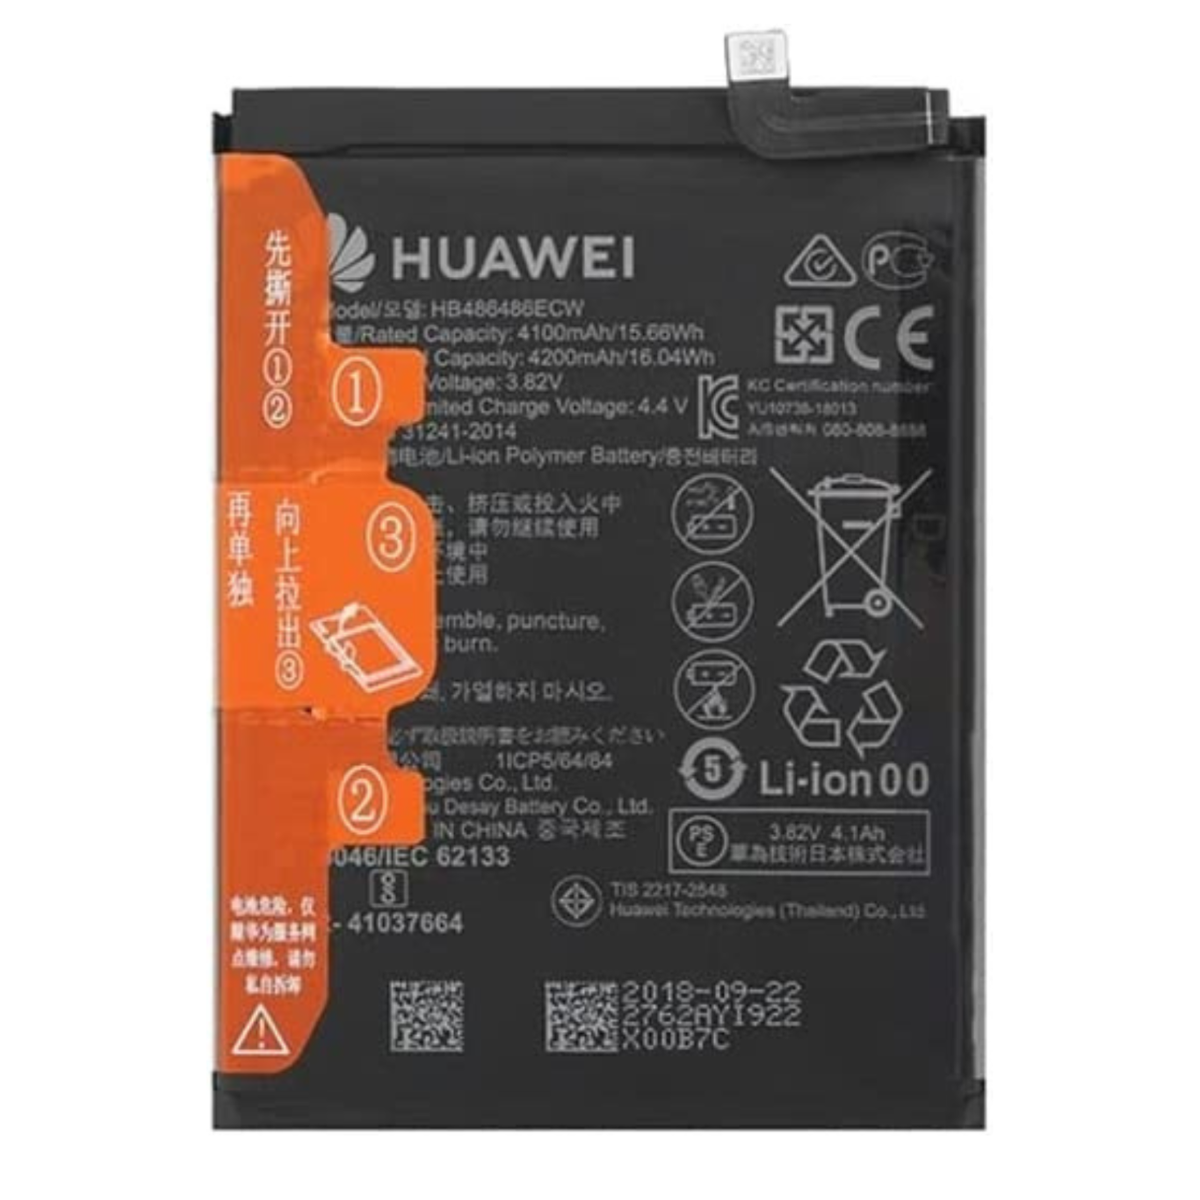 Huawei Pro/Mate HUAWEI für Batterie P30 4200mAh Li-Ion Akku 20 3,82V 4200 Pro 3.82 Handy-/Smartphoneakku, mAh Huawei Volt, HB486486ECW